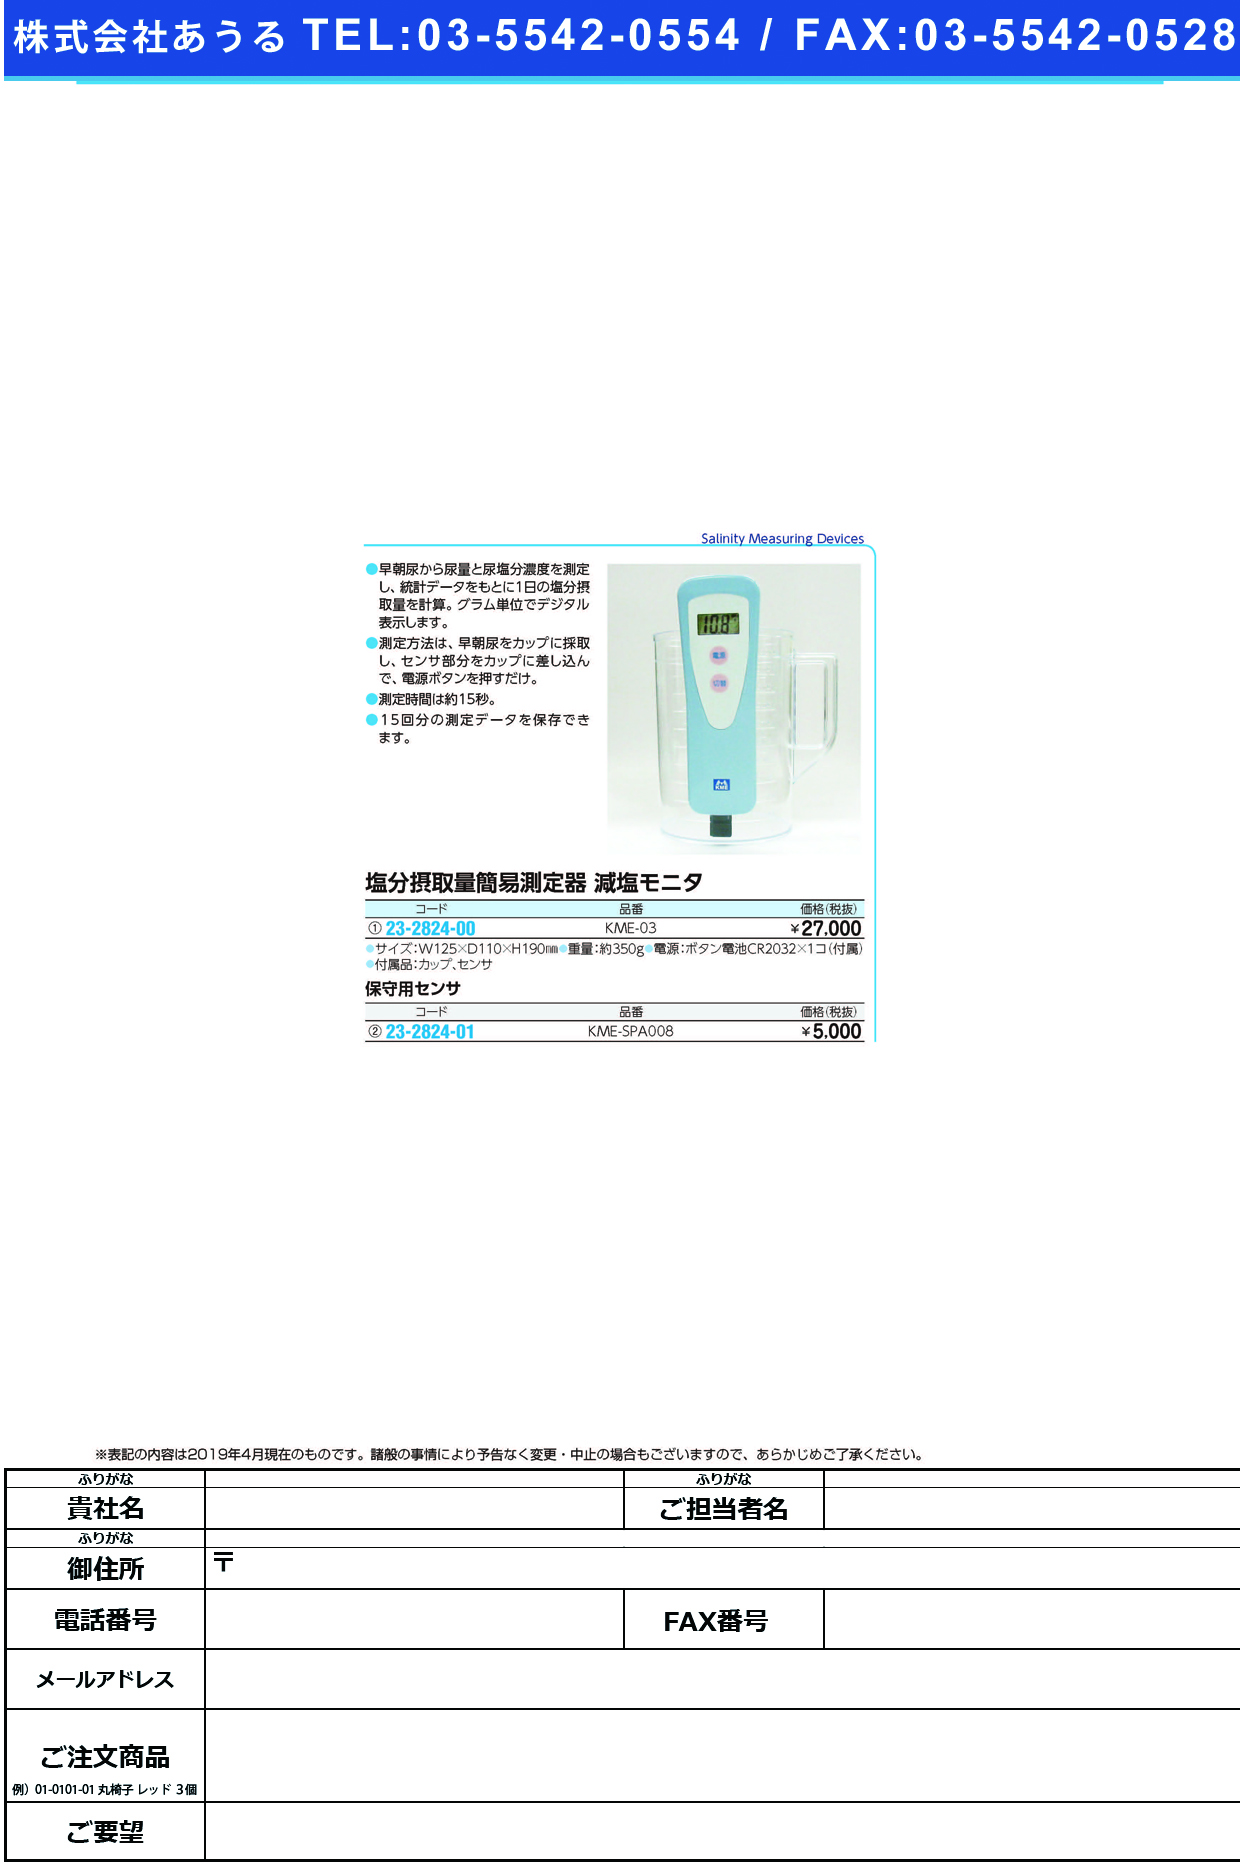 (23-2824-01)減塩モニタ用センサ KME-SPA008 ｹﾞﾝｴﾝﾓﾆﾀﾖｳｾﾝｻ【1台単位】【2019年カタログ商品】